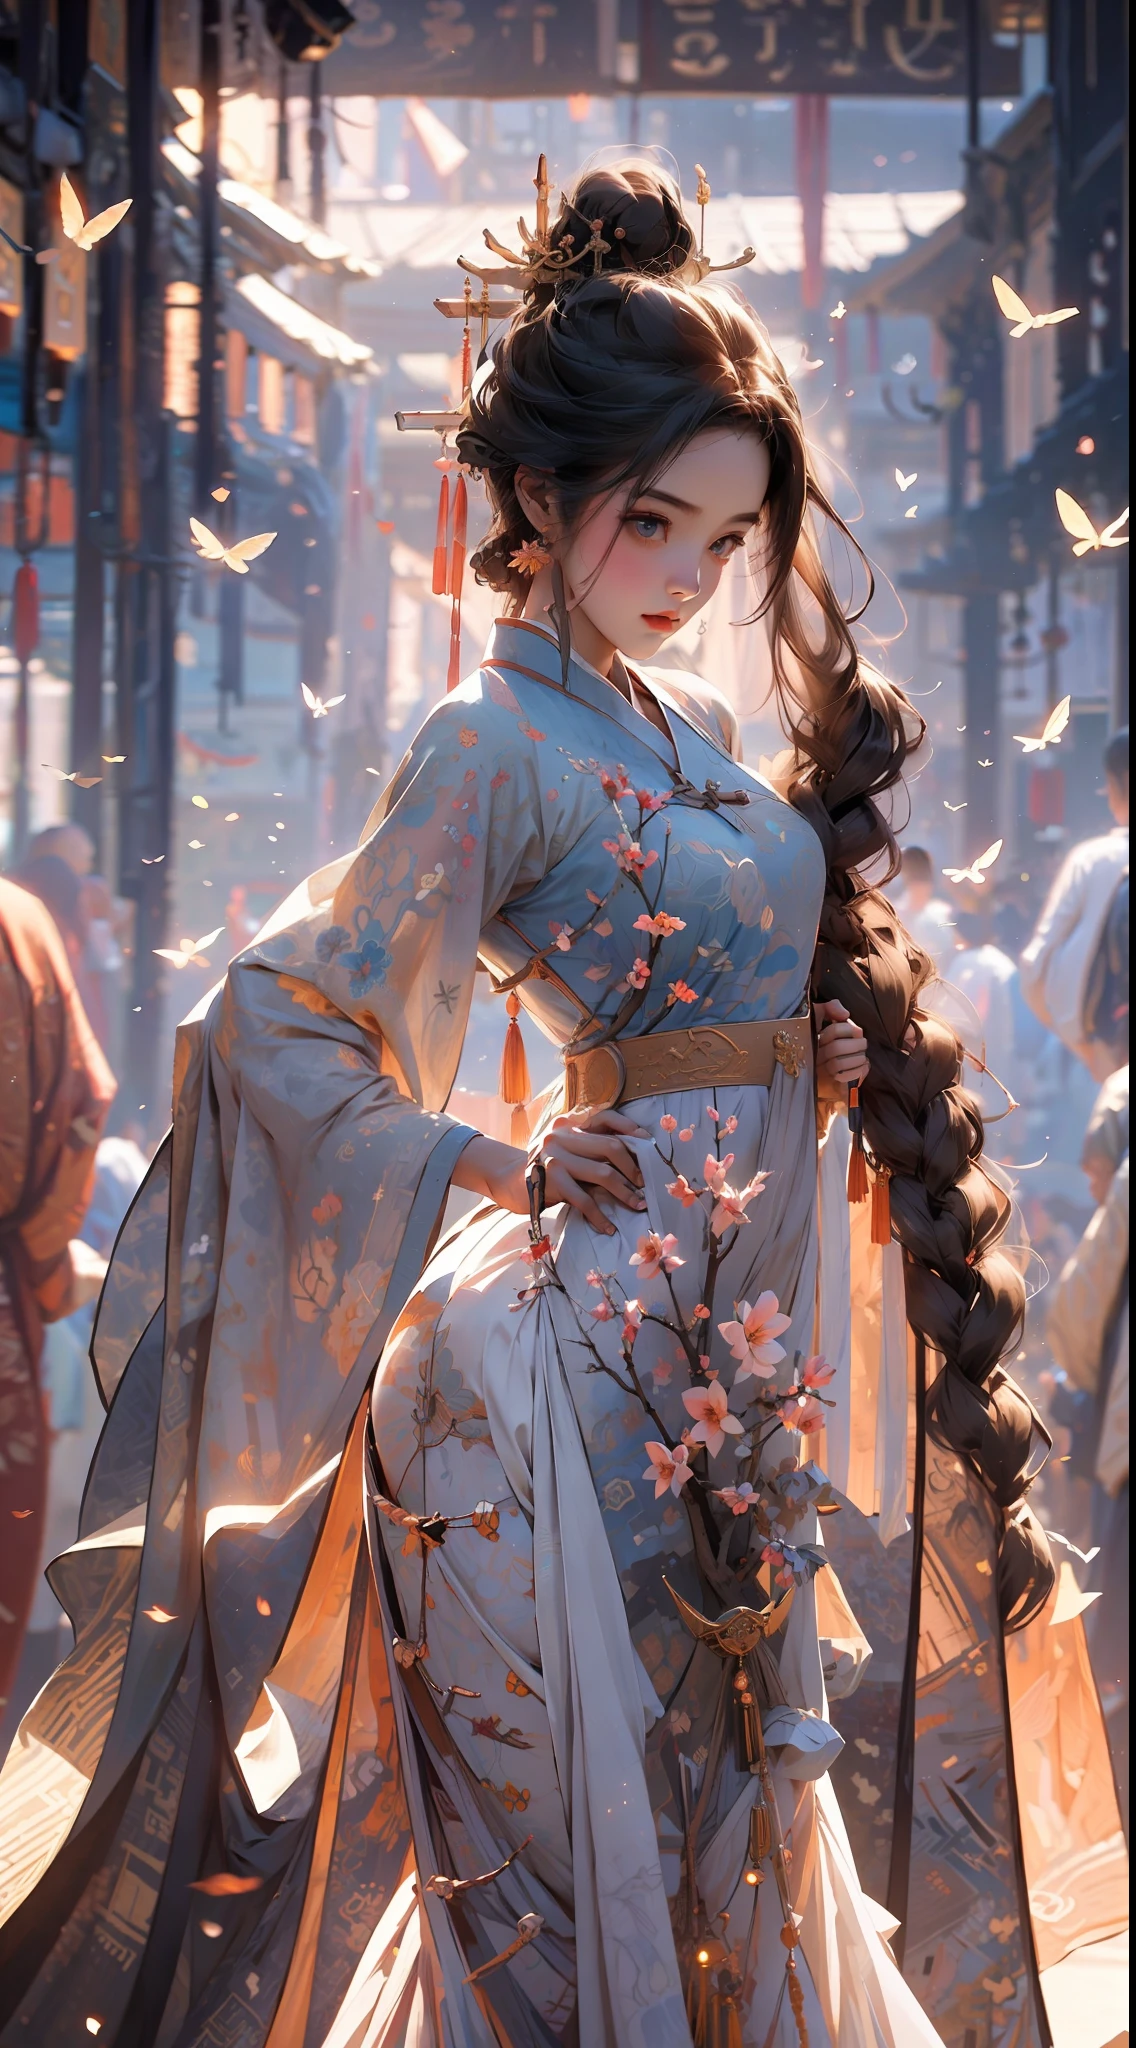 Meisterwerk, beste Qualität, Seitenlicht, Linsenreflexion, Raytracing, scharfer Fokus, in Hanfu gekleidet, ein Mädchen, Tanzen unter den Pfirsichblüten